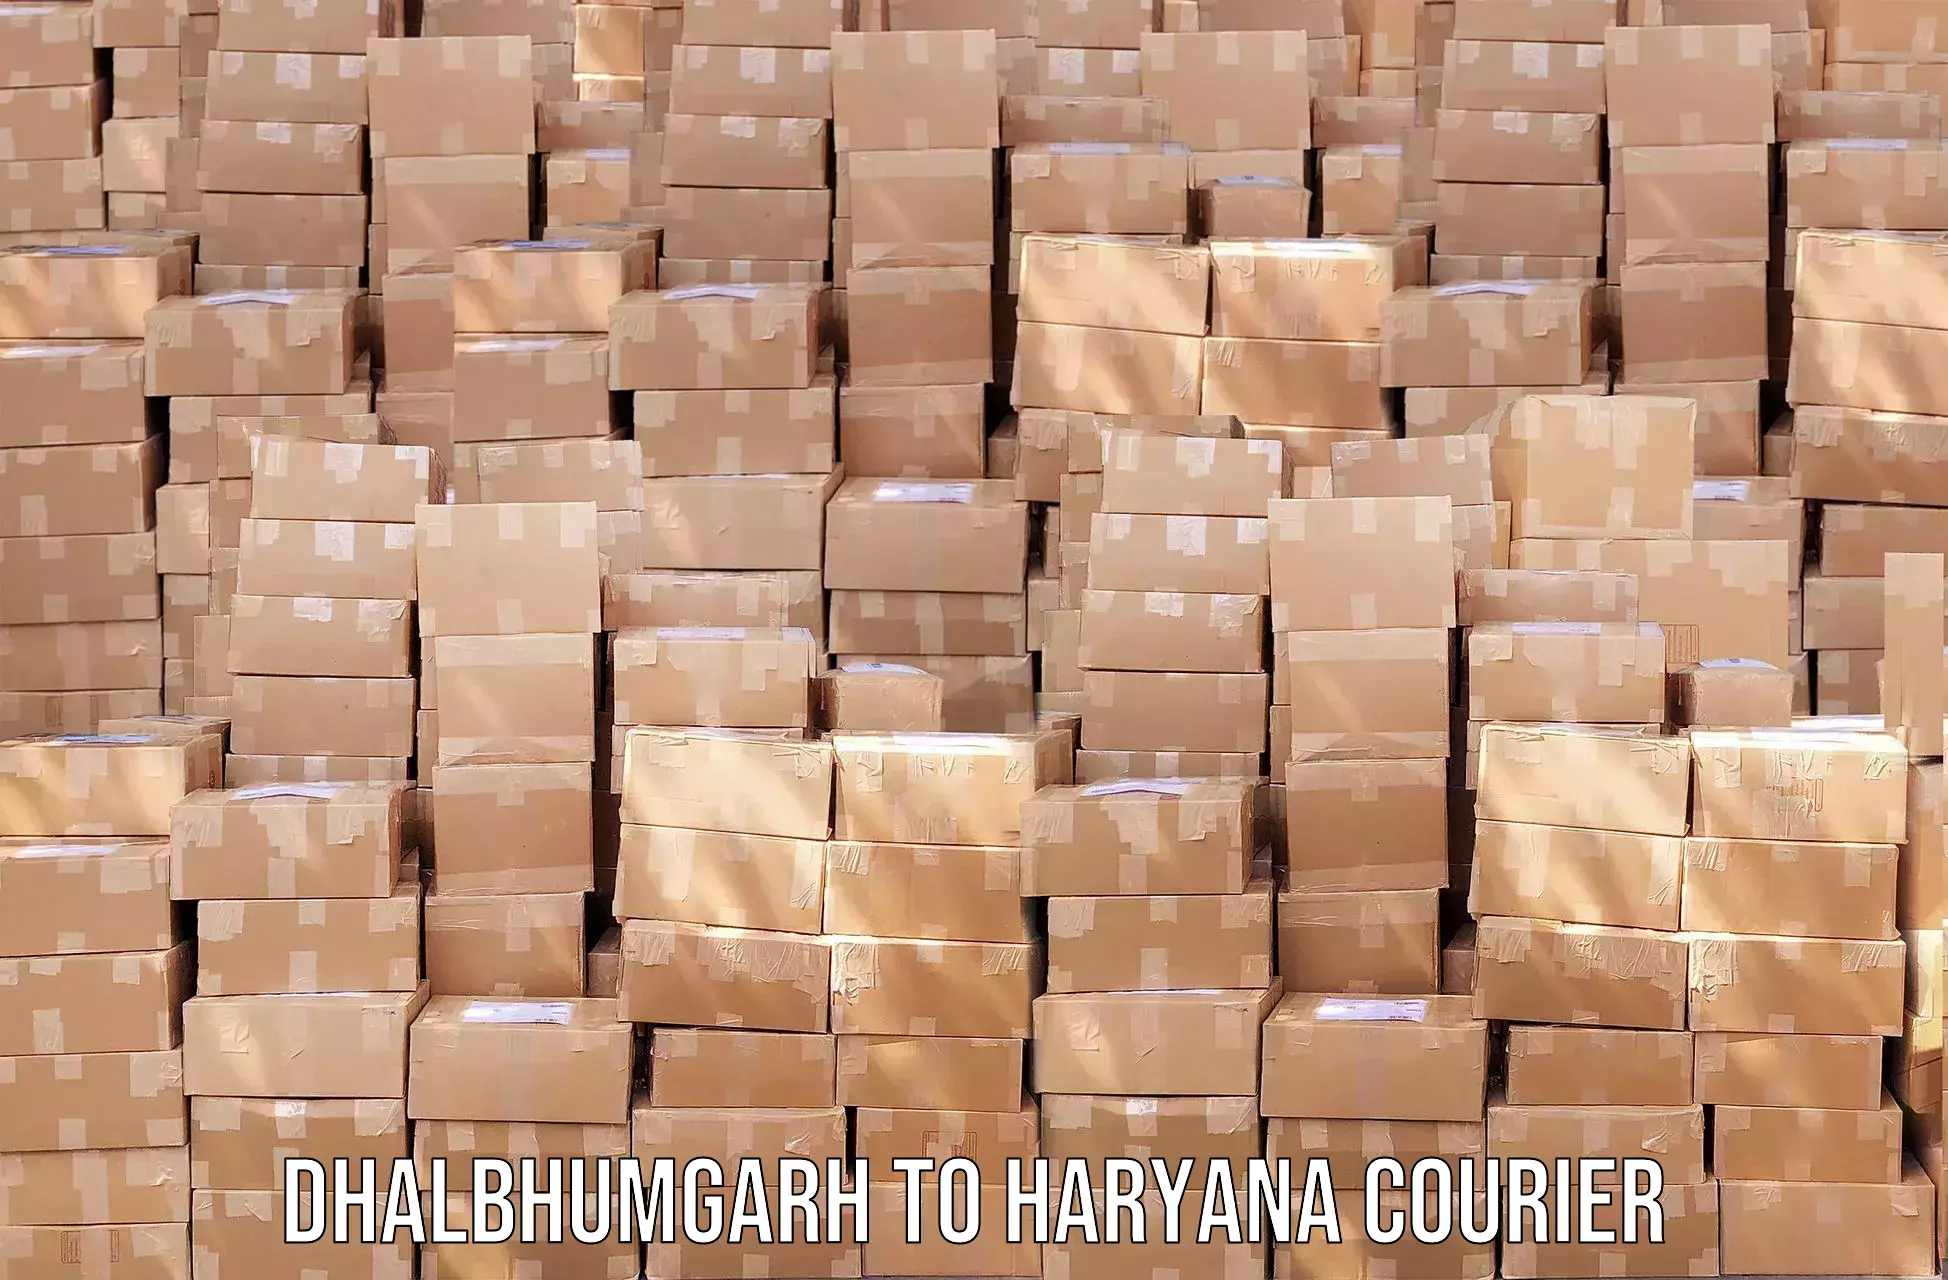 Courier insurance Dhalbhumgarh to Haryana